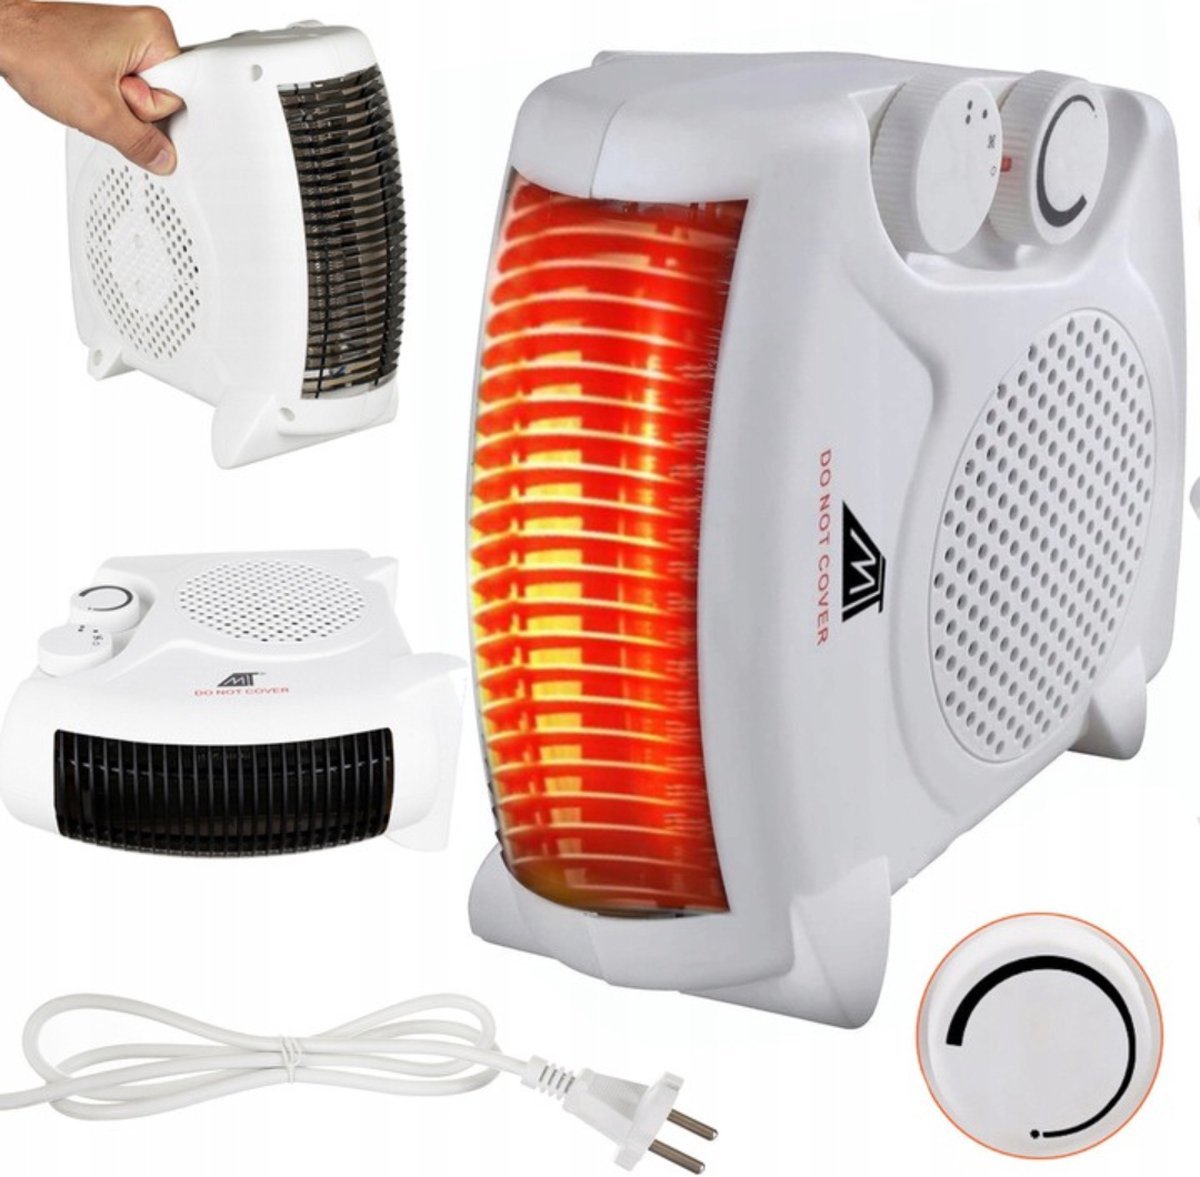 MOZY - Luchtverwarmer Waikiki - Heater - Wit - 3 Standen - 2000W - Warme en Koude lucht - Infrarood - Energiebesparing - Elektrische Ventilatorkachel - Warmte Ventilator - Straalkachel - Energiezuinige Verwarming - Warme Lucht Blazer - Draagbaar